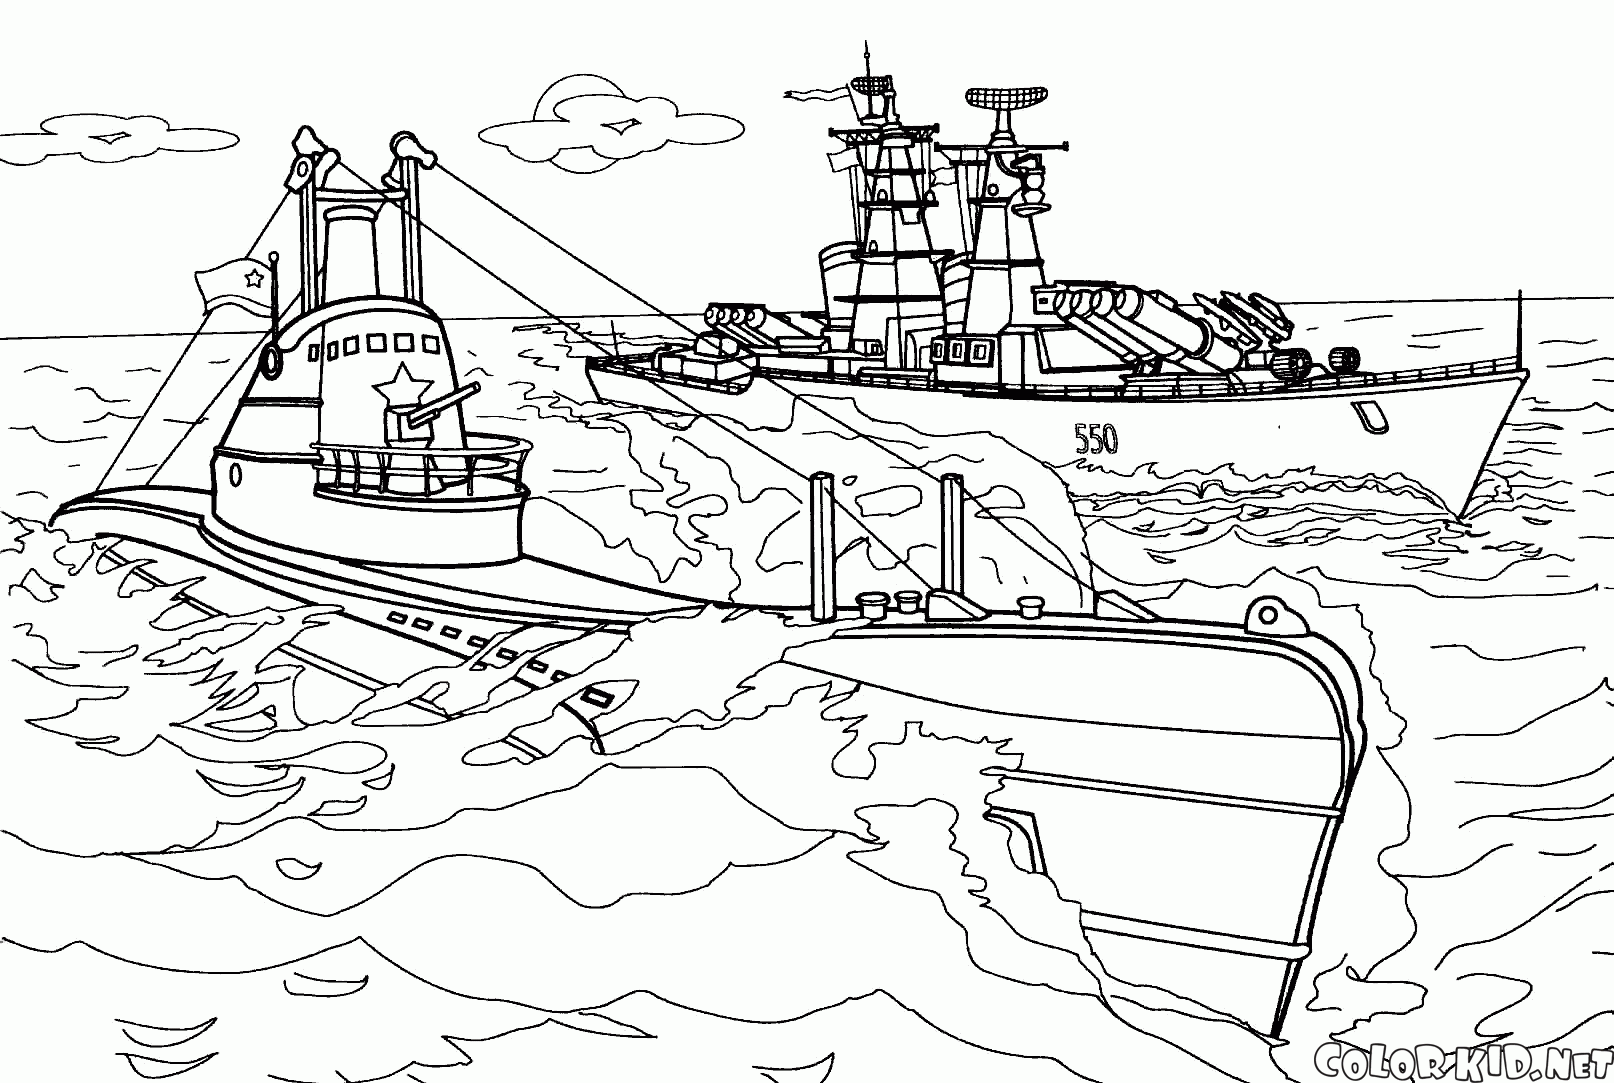 SC-402 denizaltı